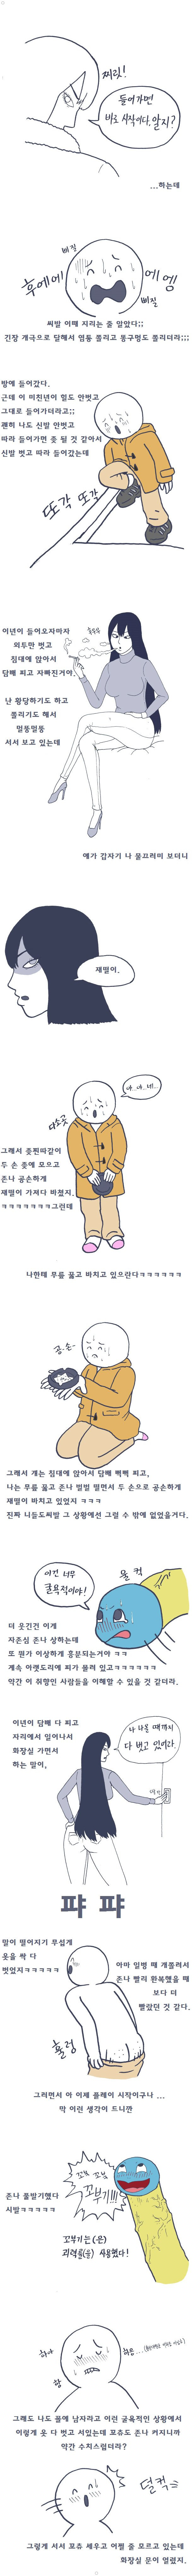 흔한디 흔한 SM 첫경험 했던 썰만화 ㅎㅎ 이미지 #3